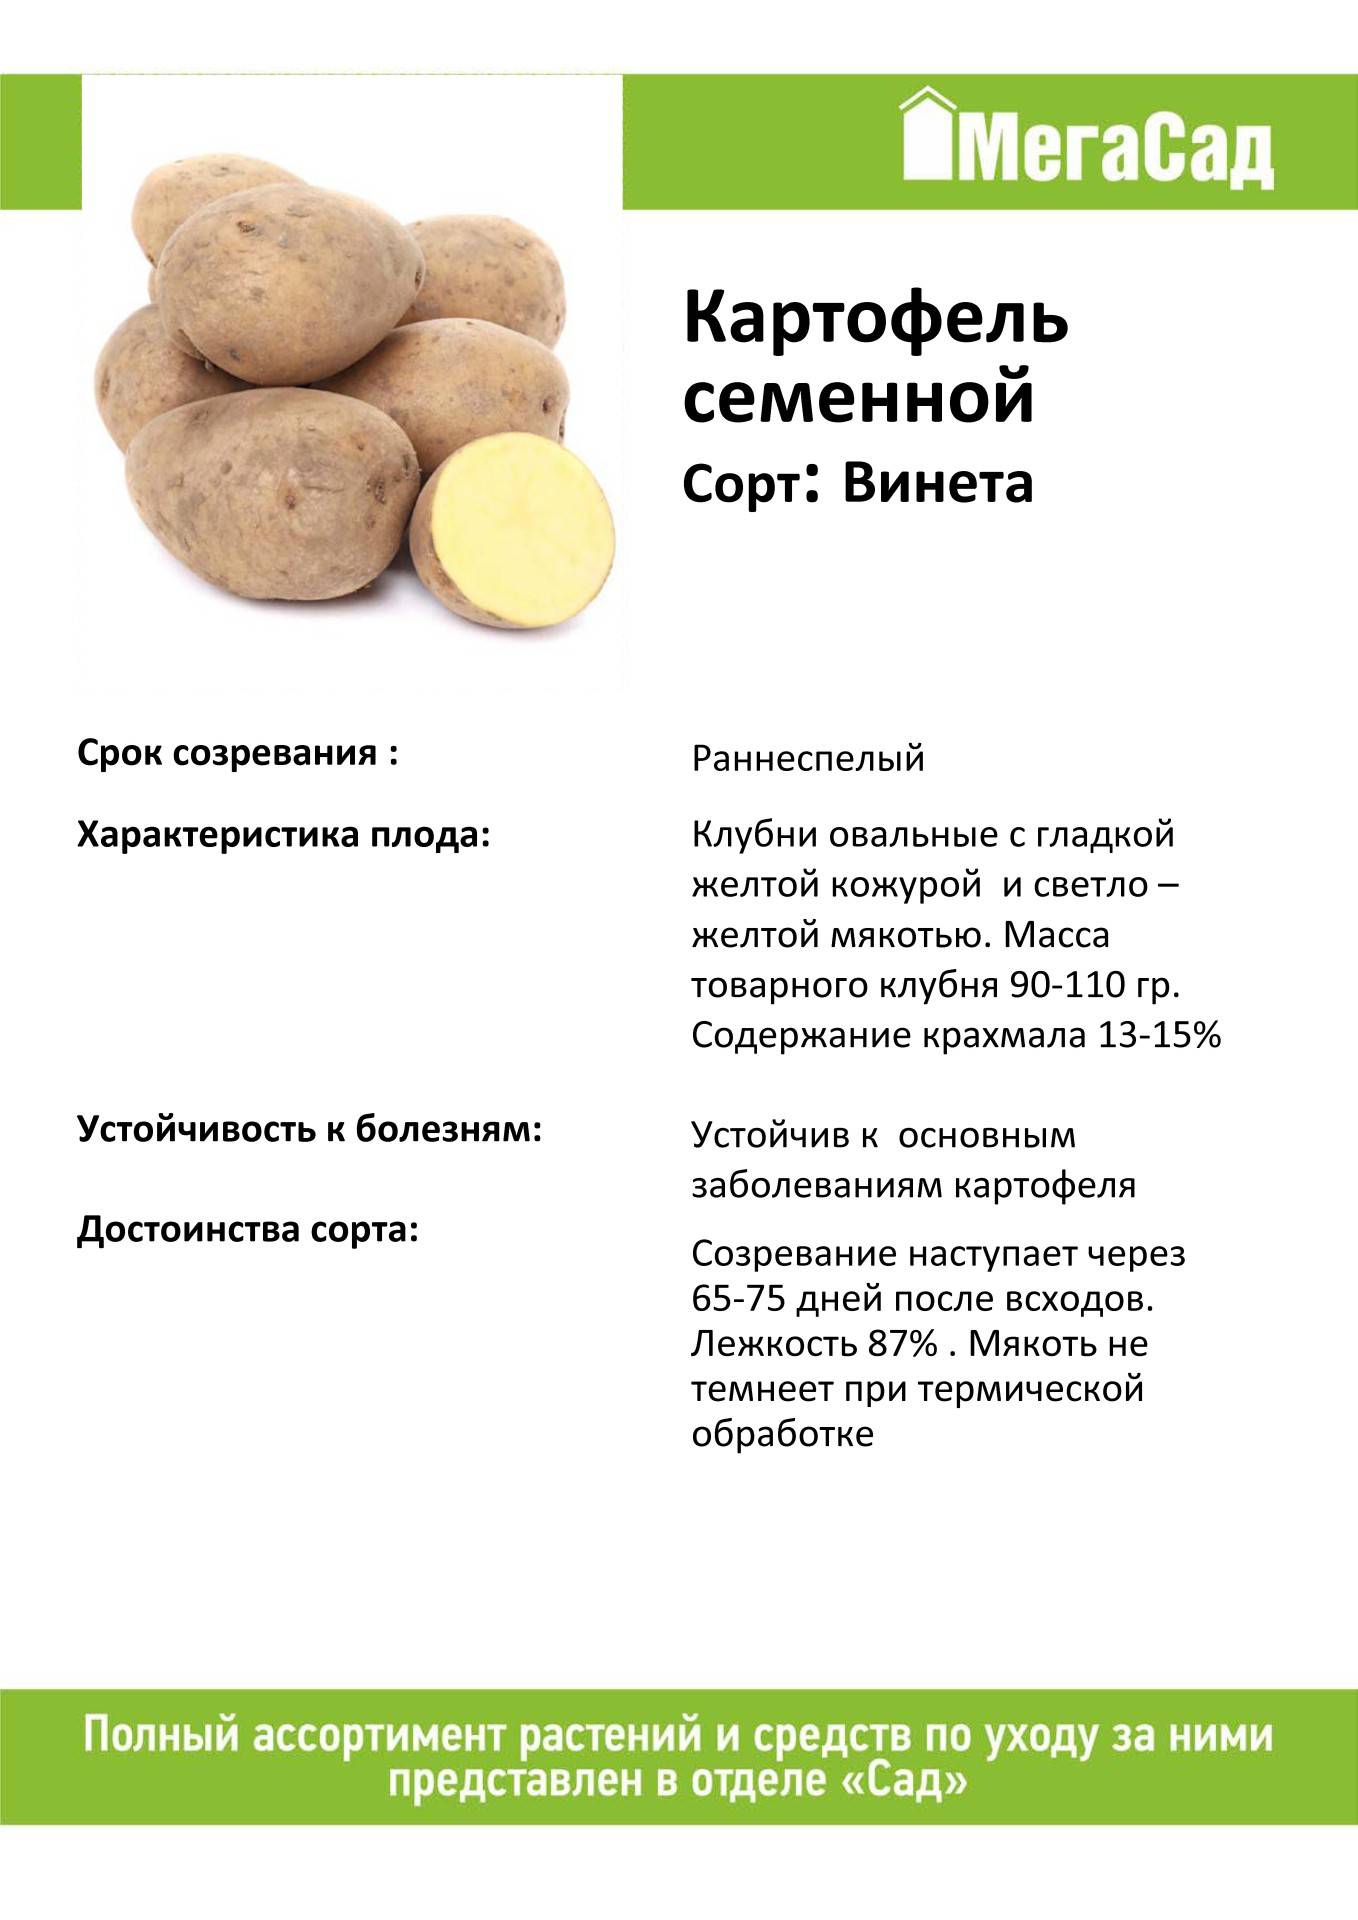 Картофель винета: описание сорта, характеристика, отзывы, фото